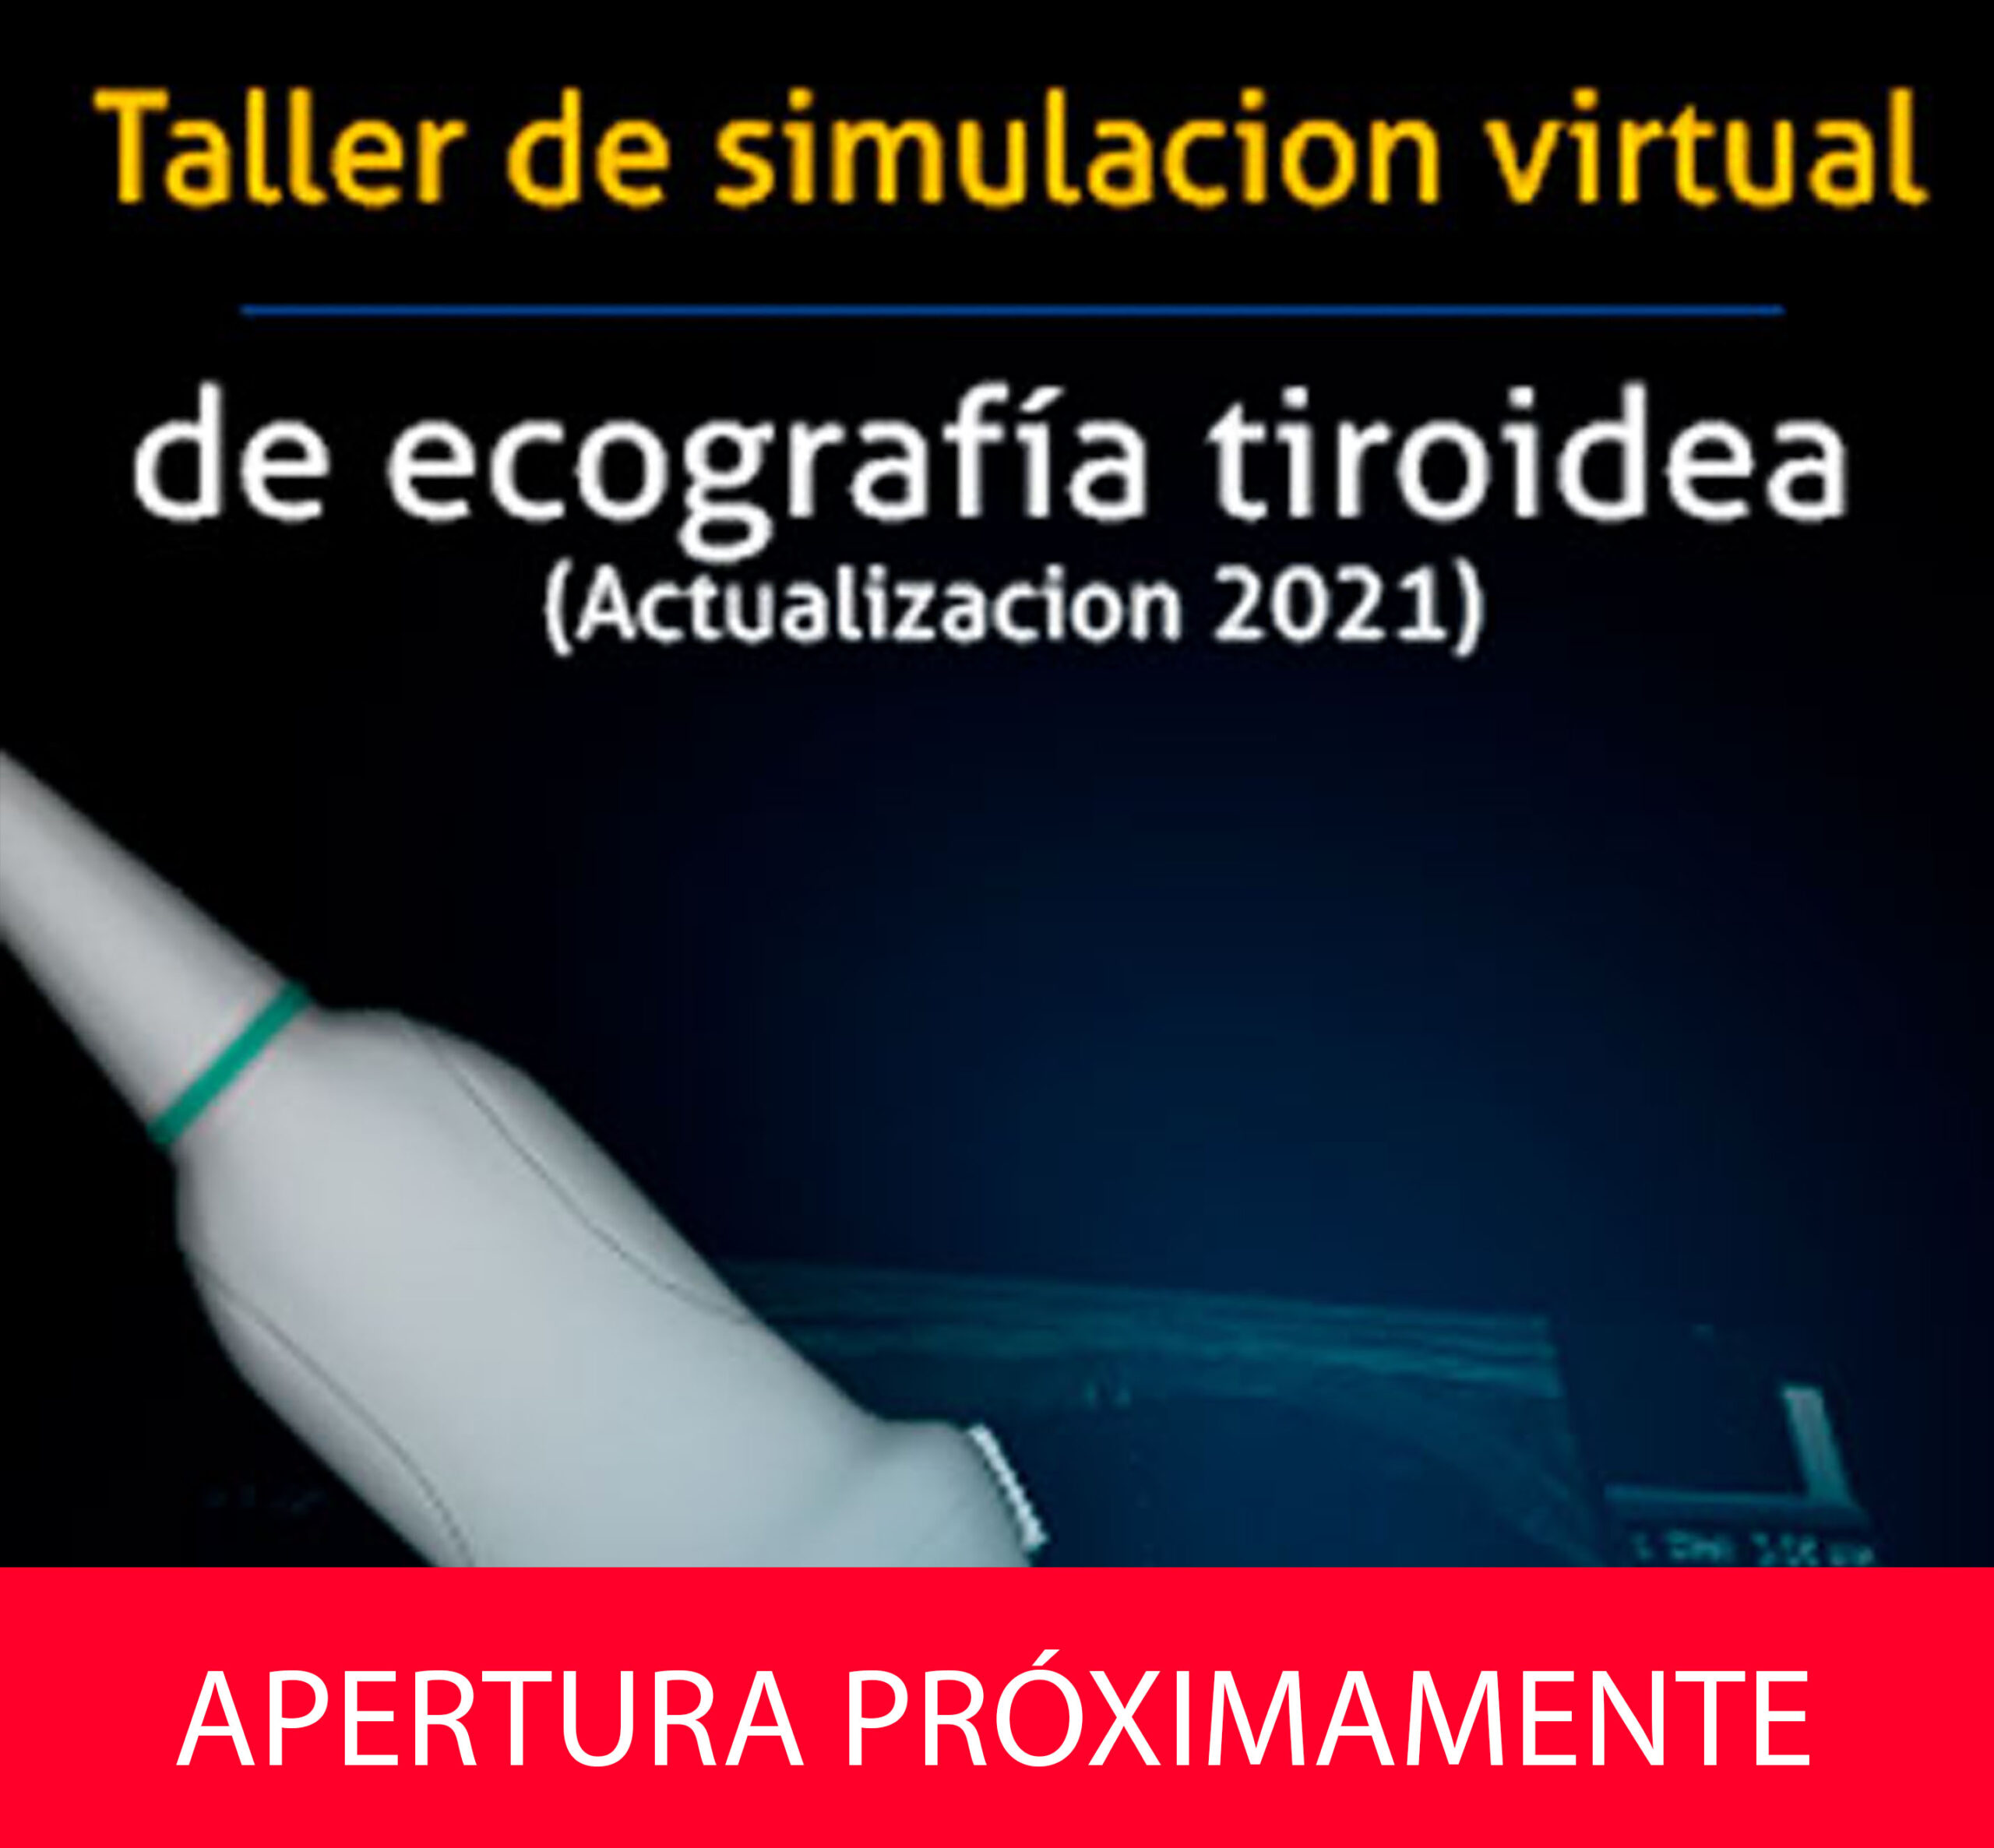 Taller de simulacion virtual de ecografía tiroidea